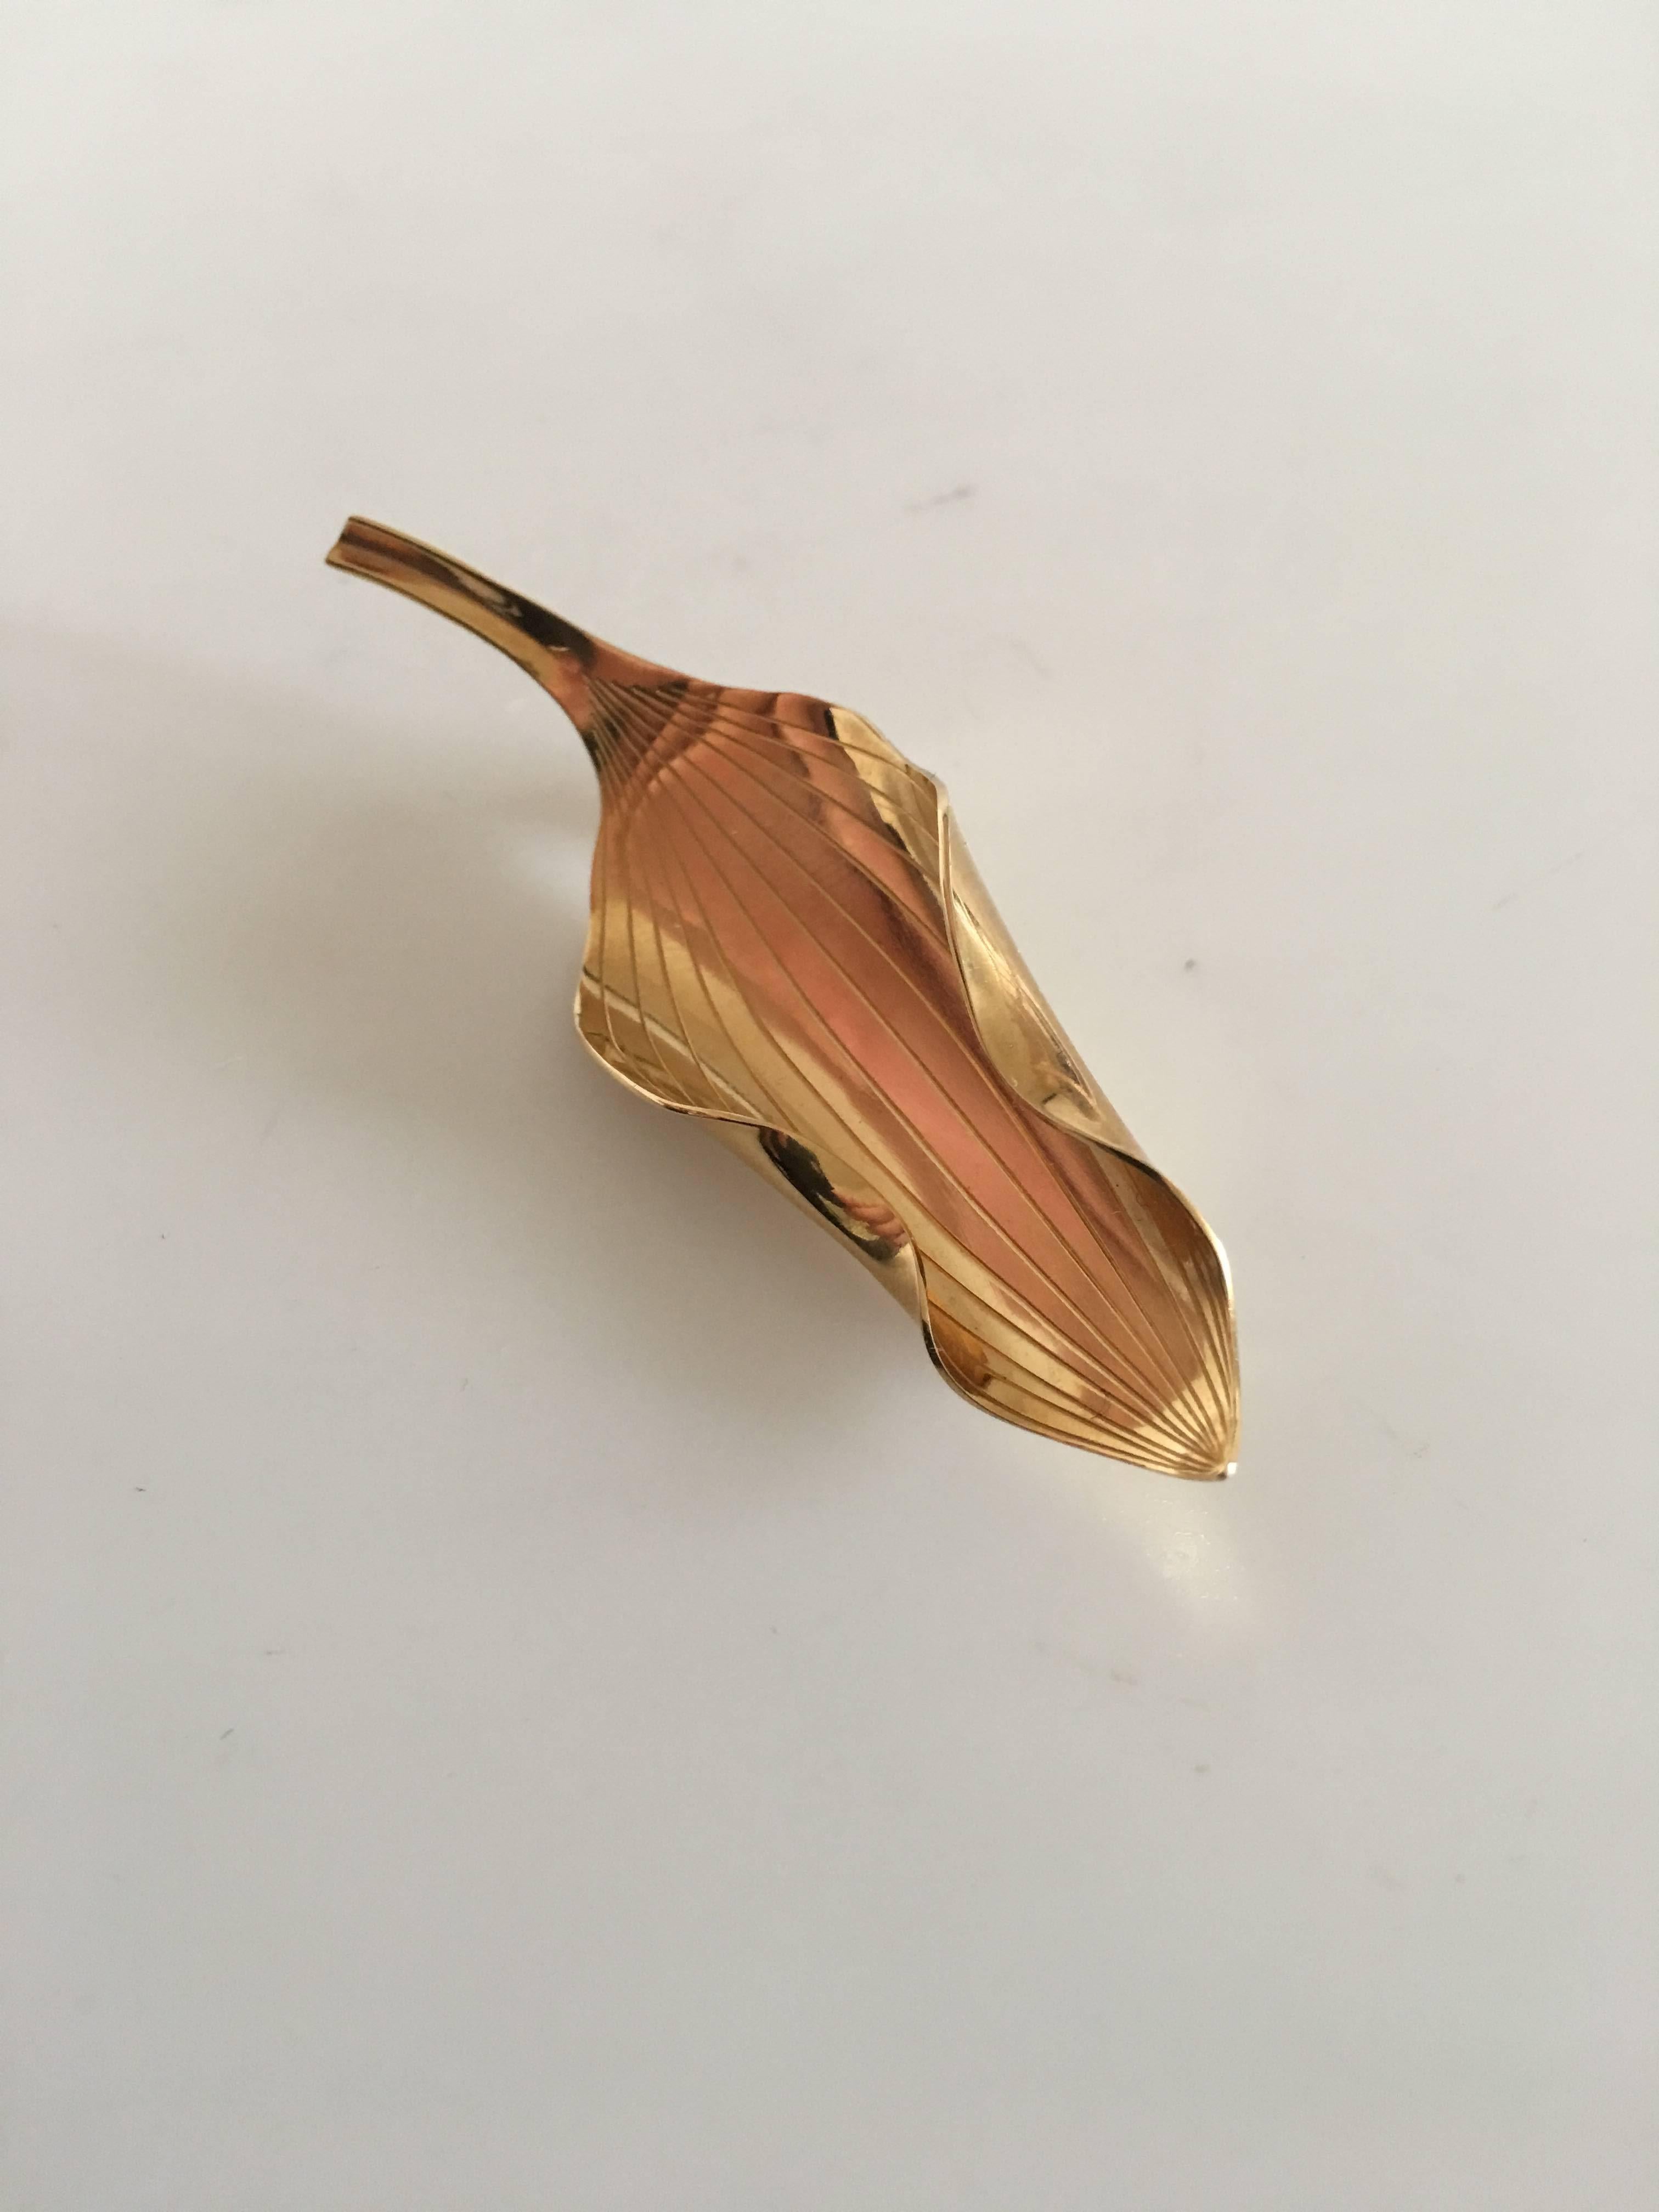 Anton Michelsen leaf shaped brooch in 18-karat gold designed by Gertrud Engel. 6.5 cm L (2 9/16